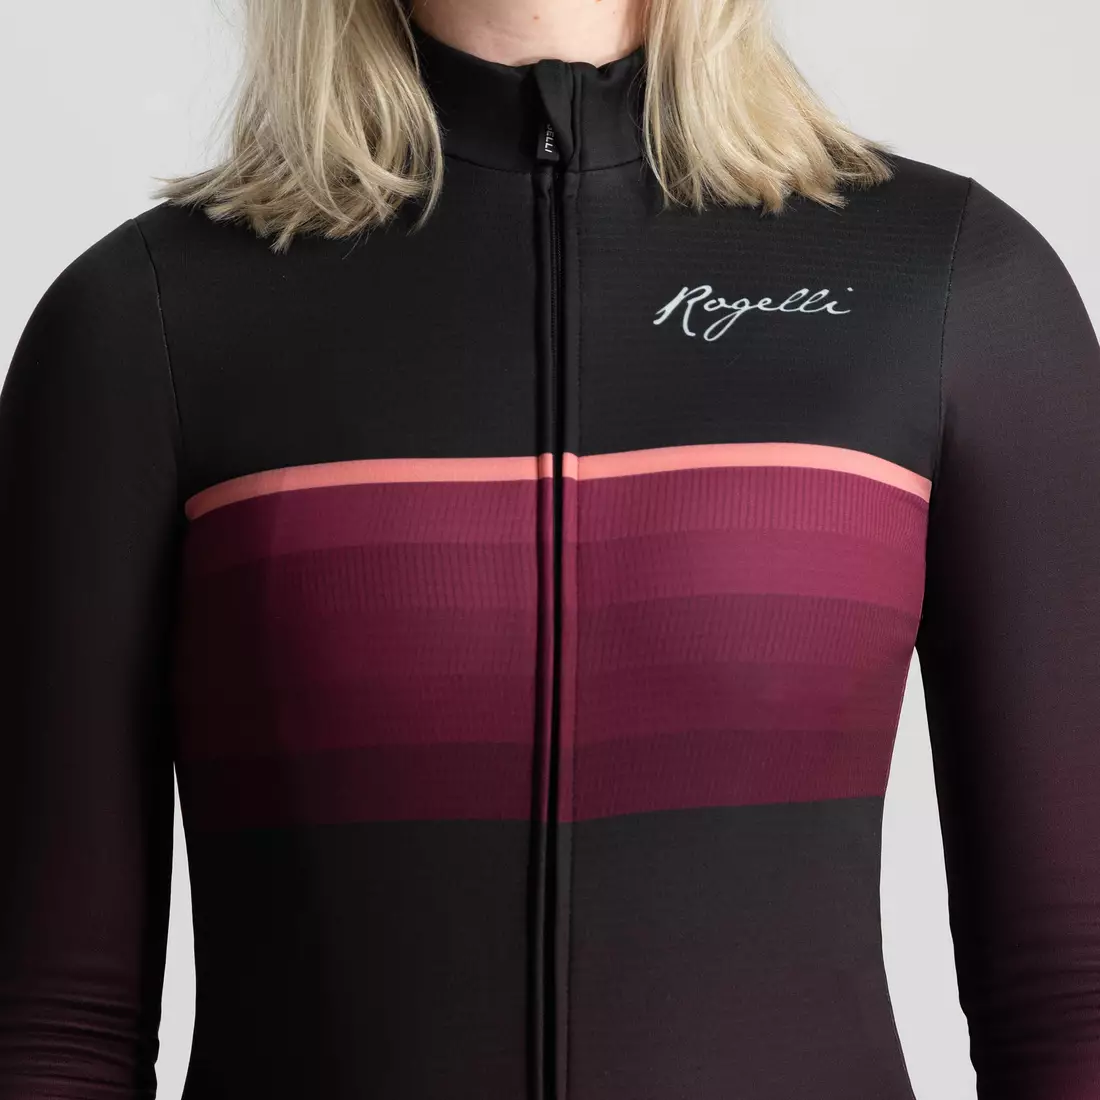 Rogelli női kerékpáros pulóver IMPRESS II, bordó